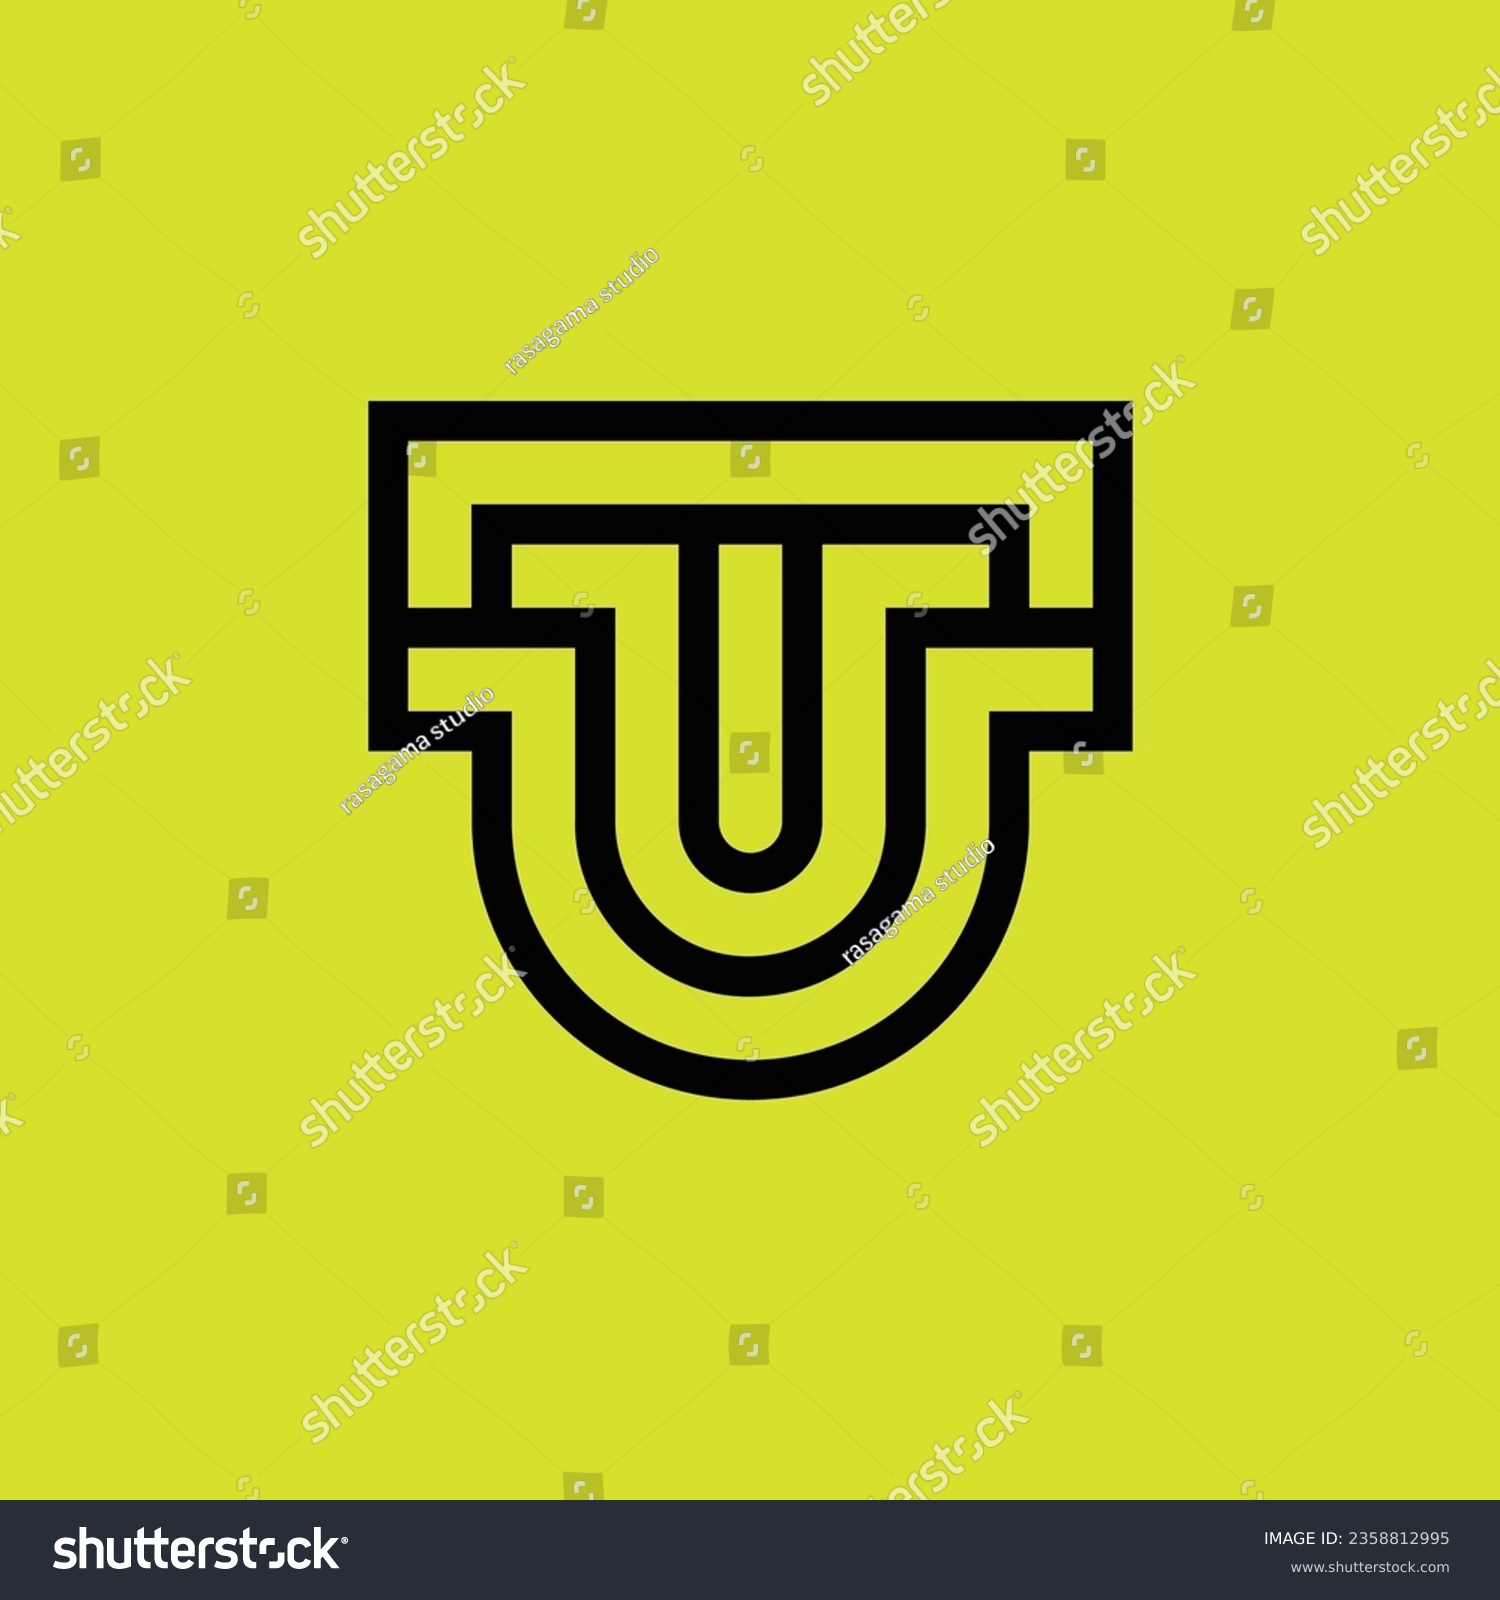 SVG of Initial letter UU or 2U monogram logo svg